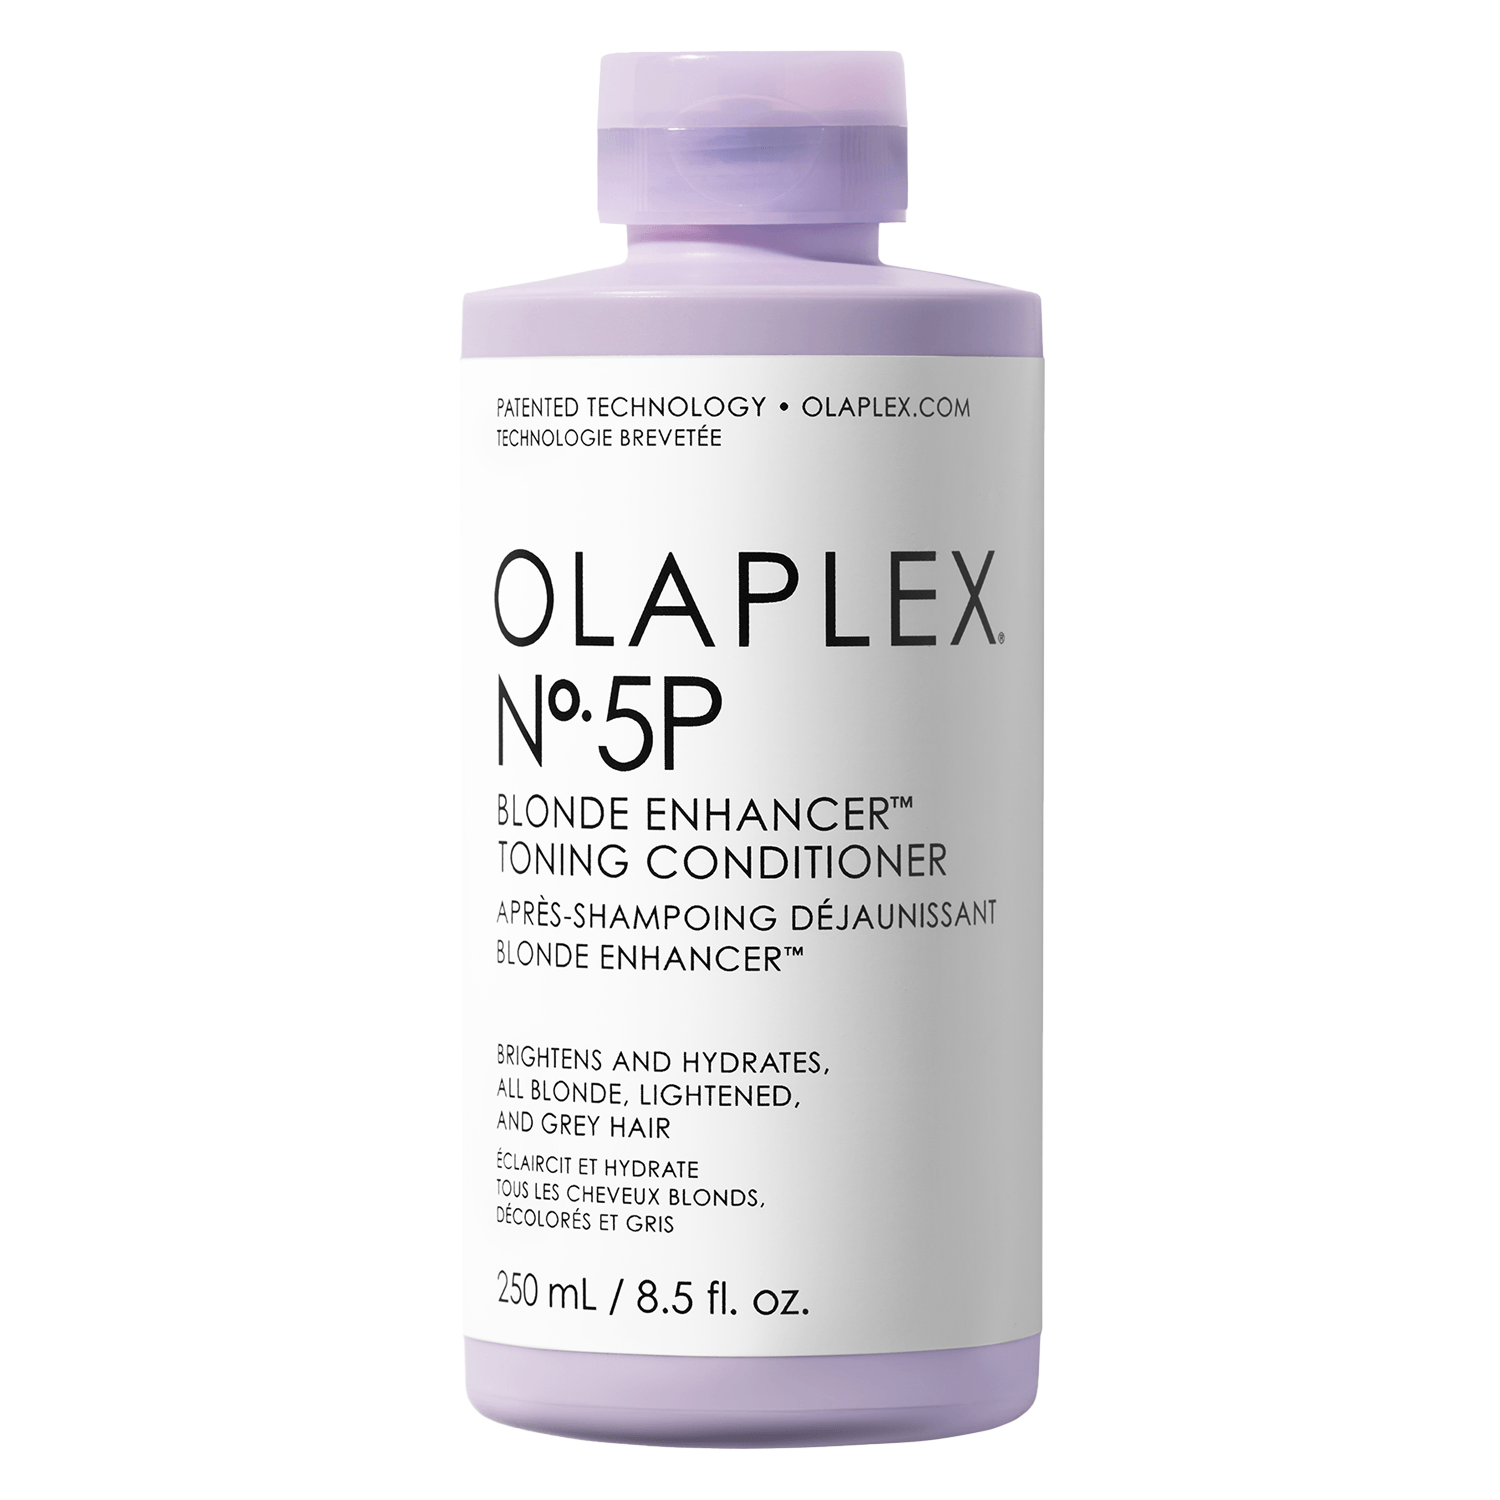 Produktbild von Olaplex - Blonde Enhancer Toning Conditioner No.5P